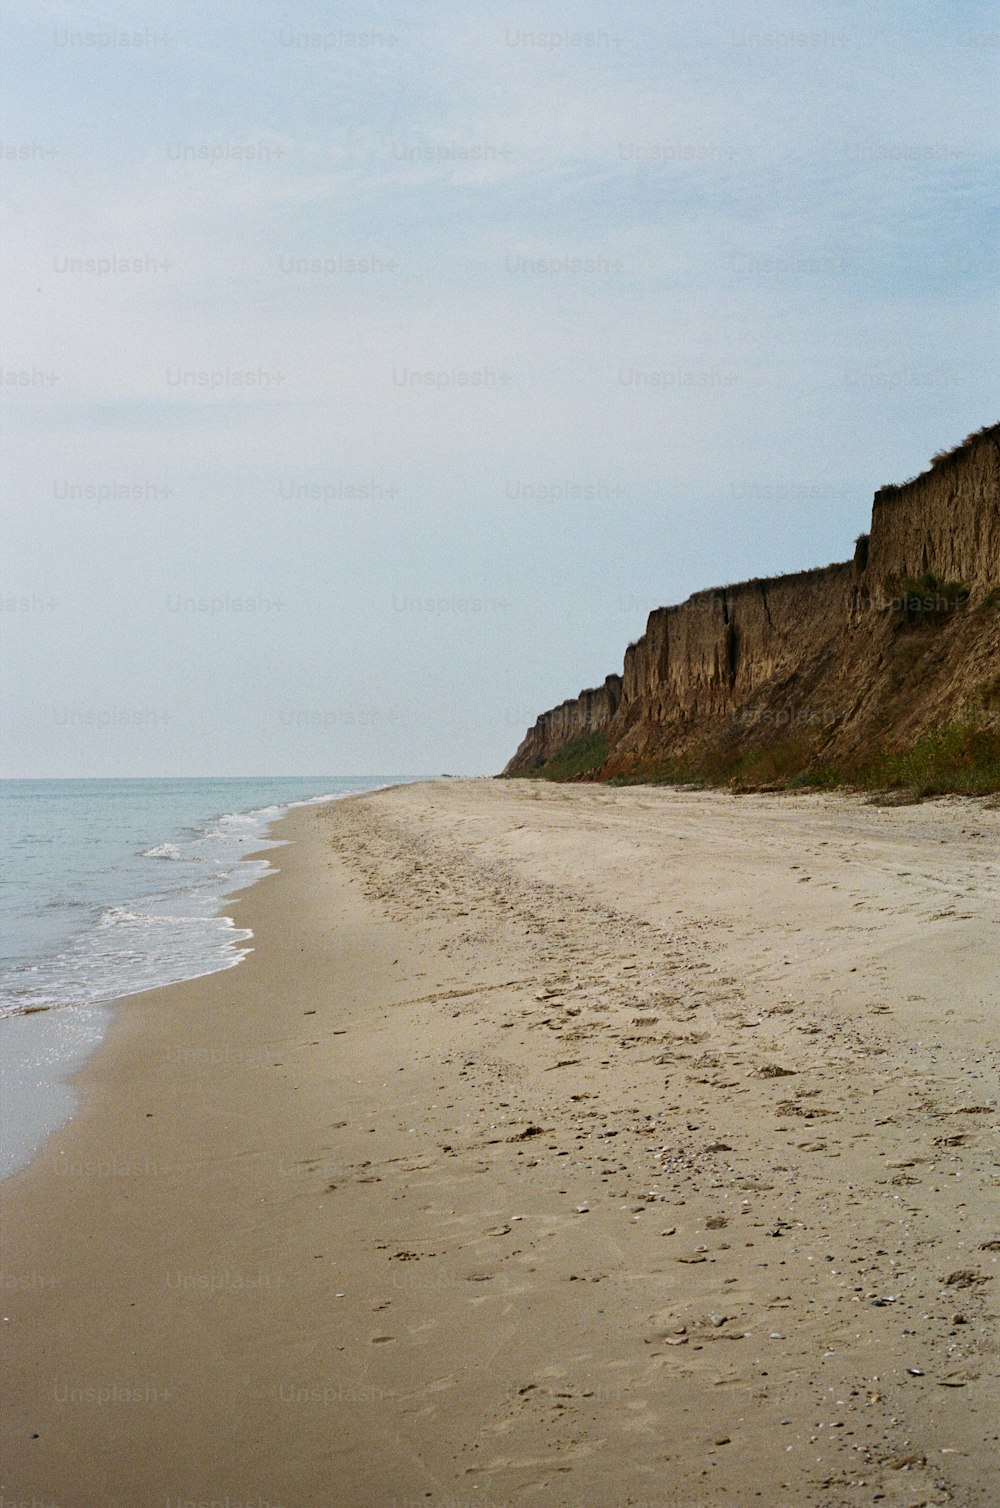 Una playa de arena con un acantilado al fondo